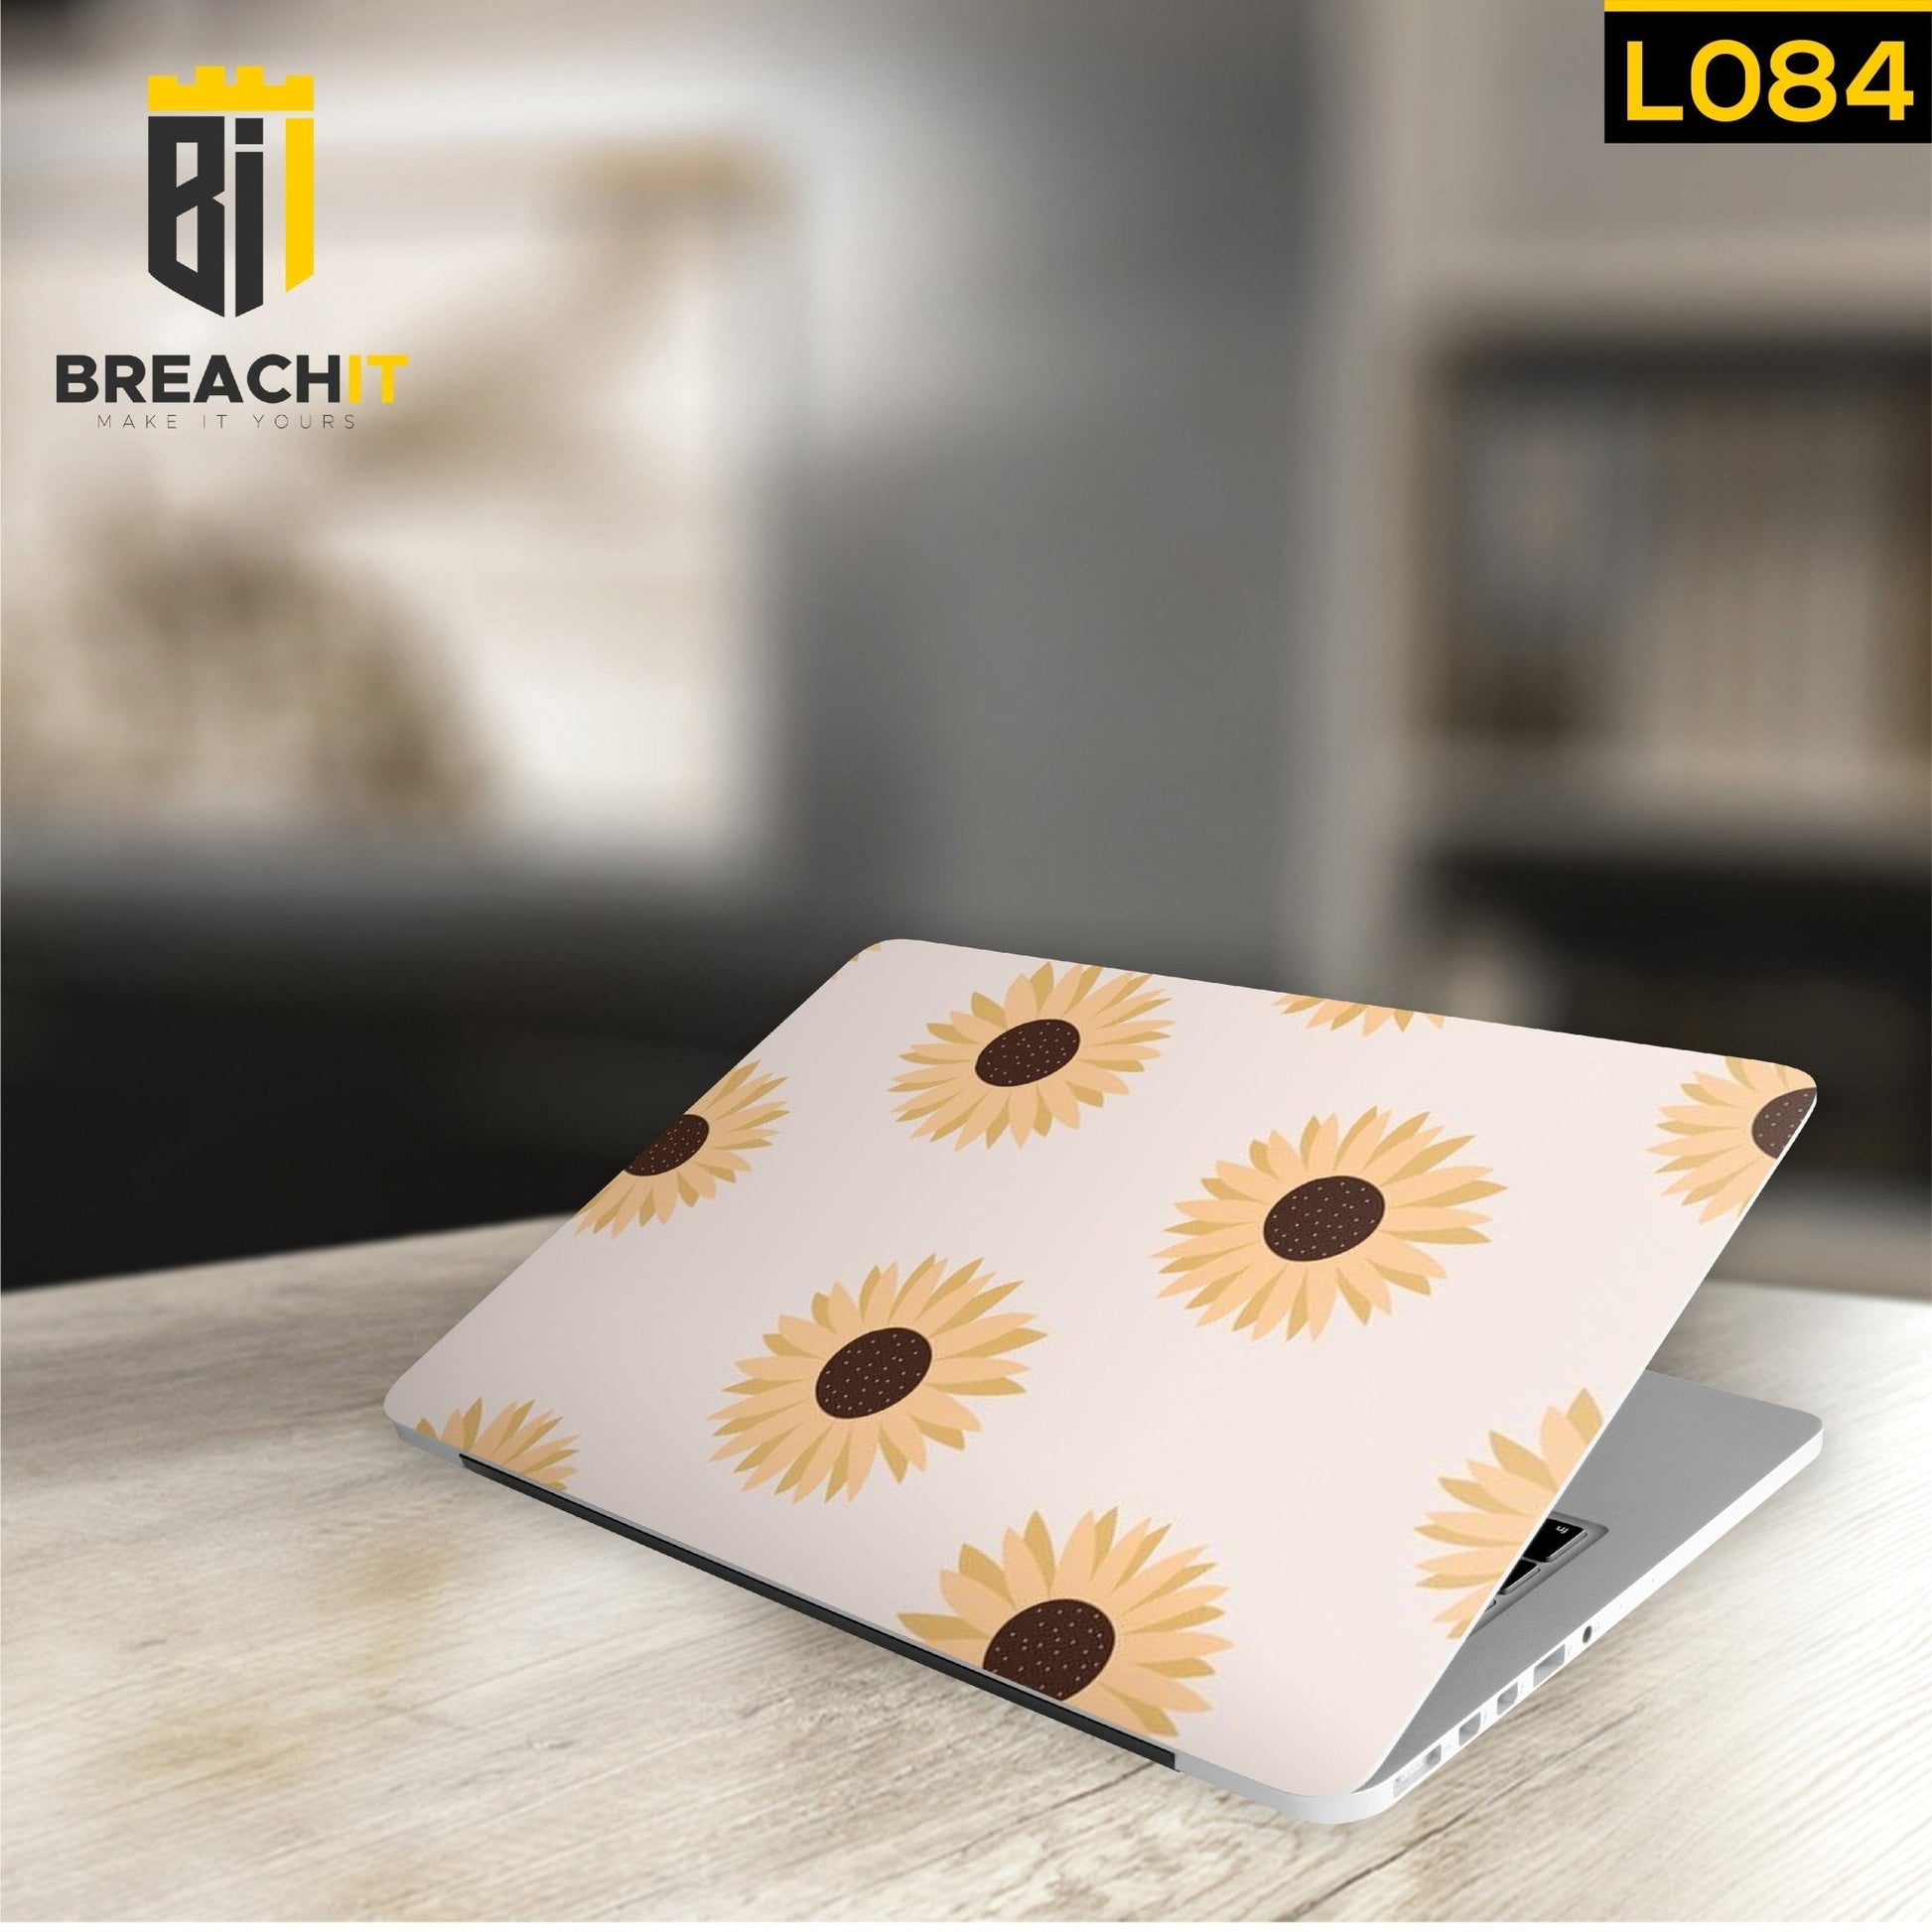 L084 Sun Flowers Laptop Skin - BREACHIT